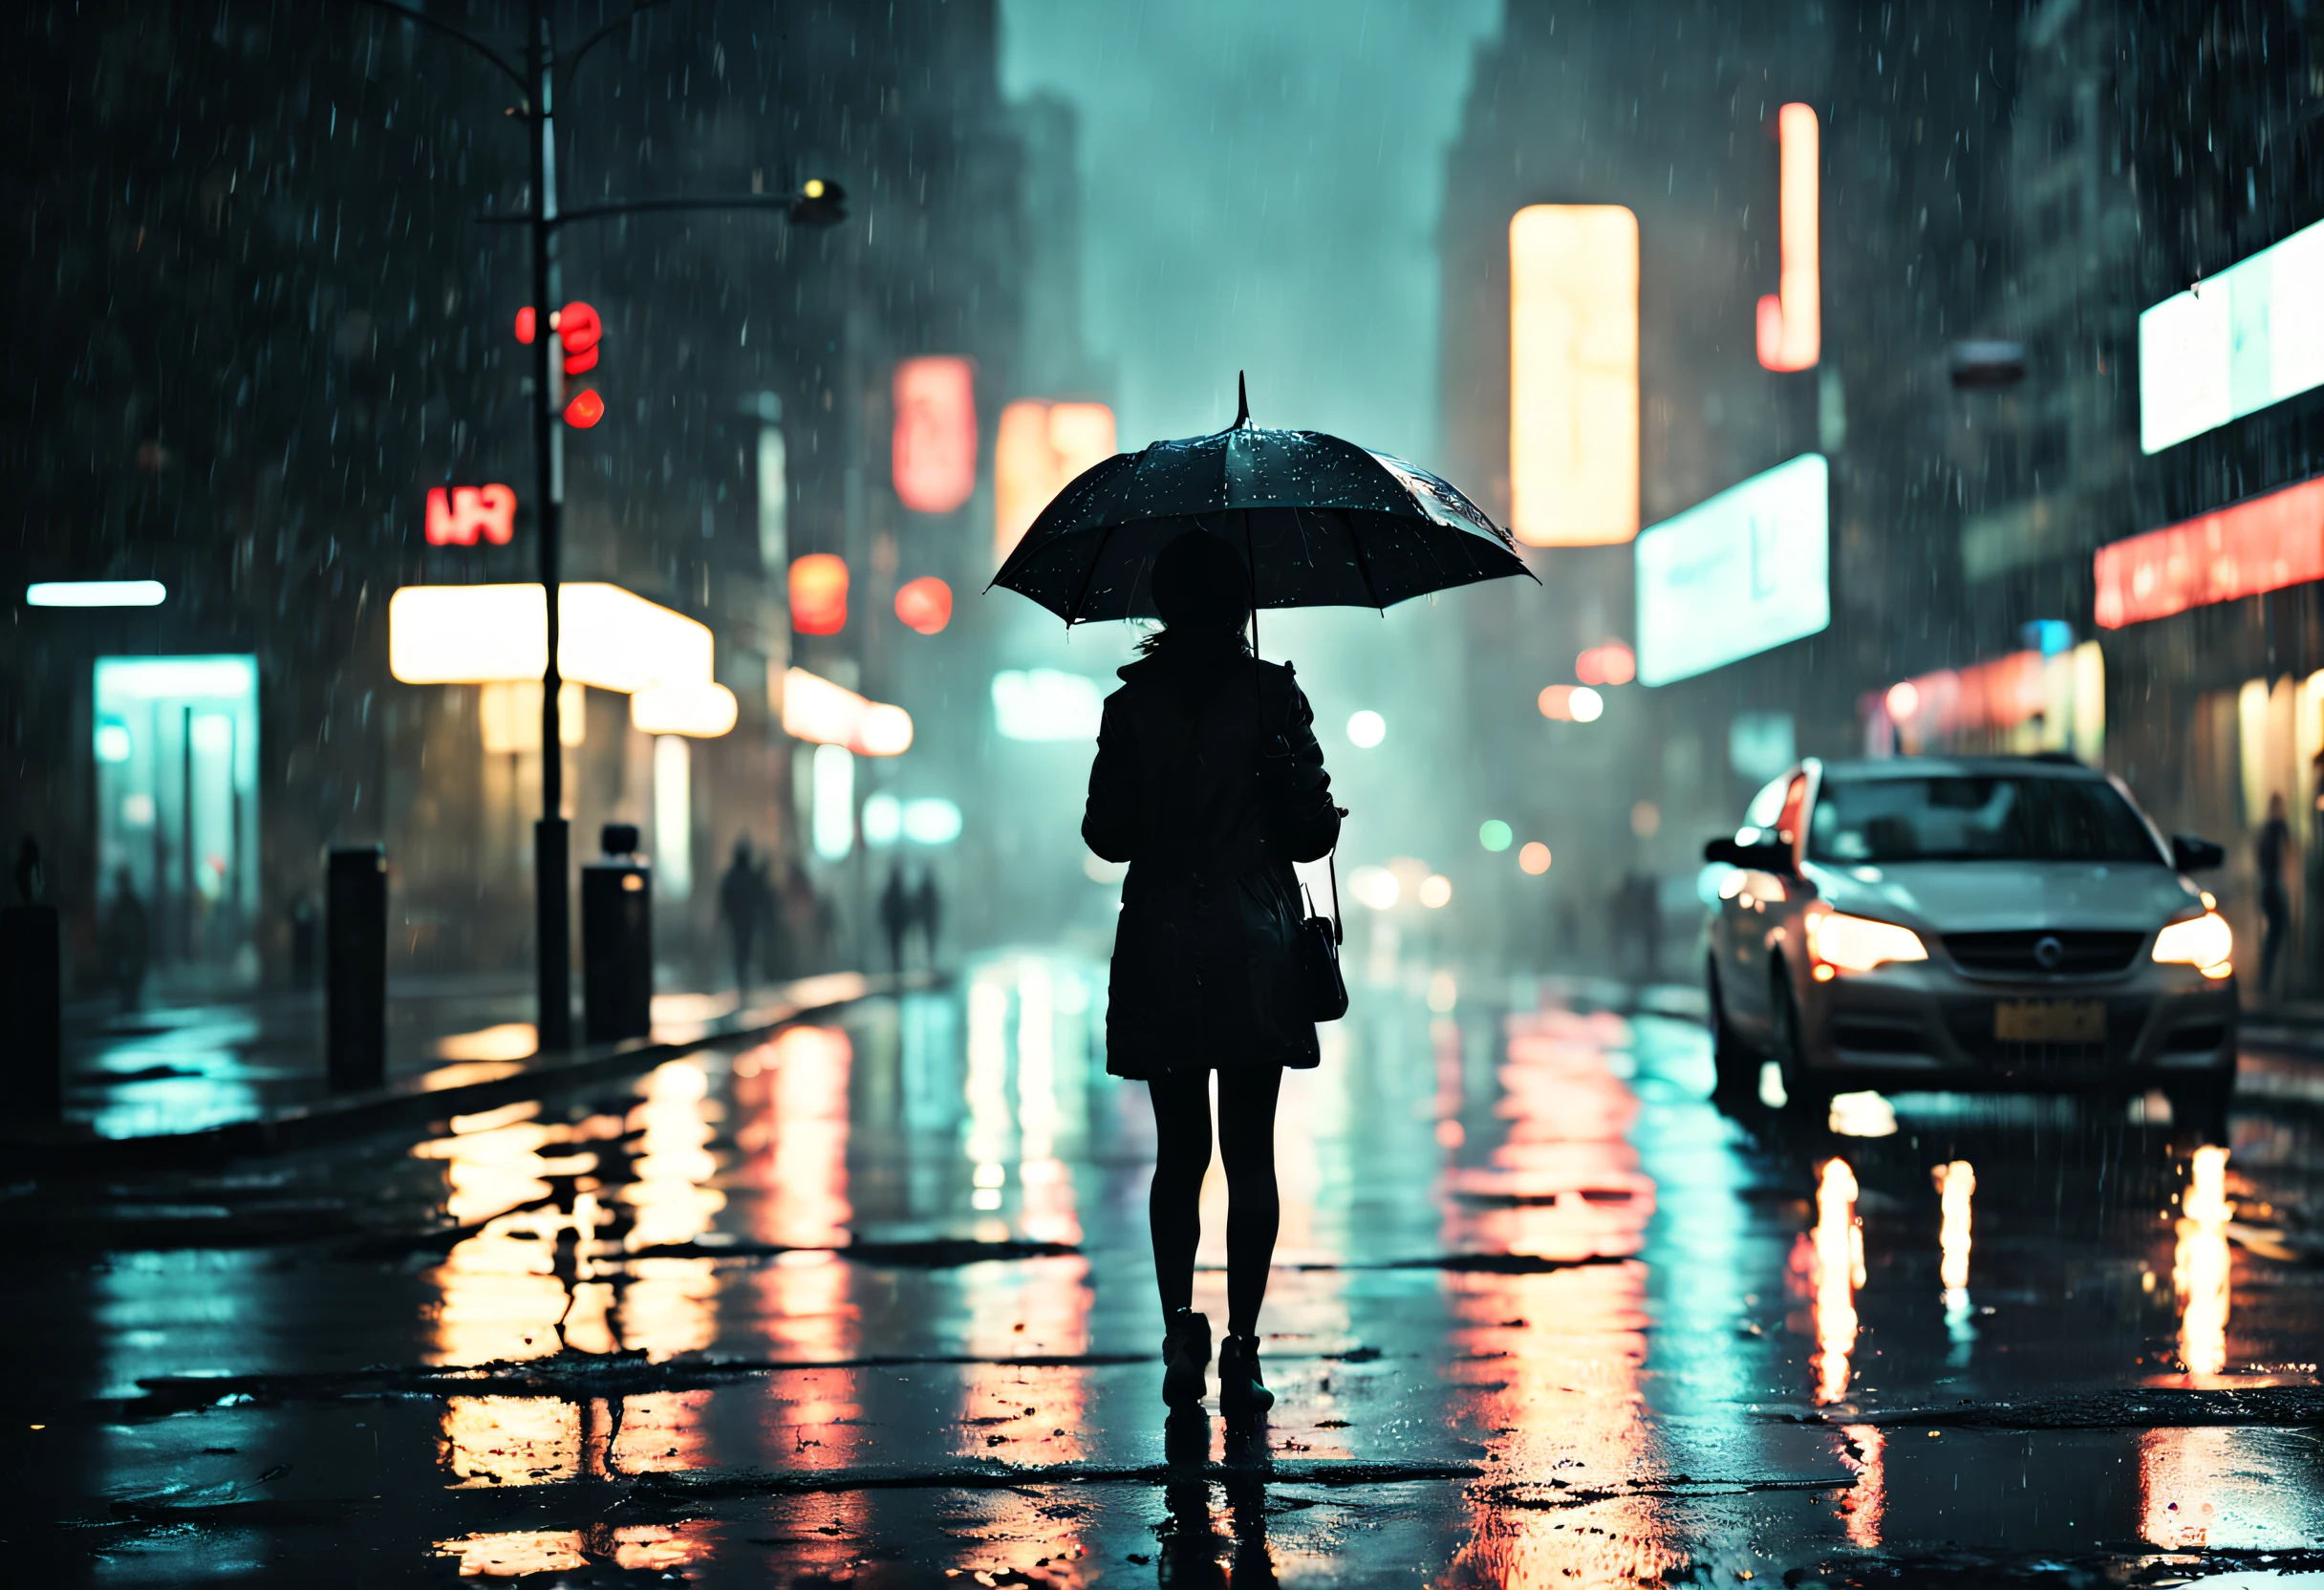 昏暗的街道上，一个女孩站在滴着水的雨伞下,雨滴在潮湿的路面上闪闪发光,路灯发出温暖的光芒,水坑里霓虹灯的倒影,人们撑着雨伞匆匆忙忙, 雨滴打在雨伞上的声音, 湿漉漉的树叶散落在地上, 朦朧的氣氛, 路灯下女孩的剪影, rainy 城市景觀 at night, 电影和情绪化的灯光, 明暗对比强烈, 神秘和孤独的感觉, 湿润而闪亮的纹理, 凉爽且不饱和的调色板, 印象派和梦幻的艺术风格. (最好的品質, 4k, 超詳細, 實際的:1.37), 下雨的夜晚, 城市景觀, 電影燈光, 湿纹理, 喜怒無常的氣氛, 印象派艺术风格